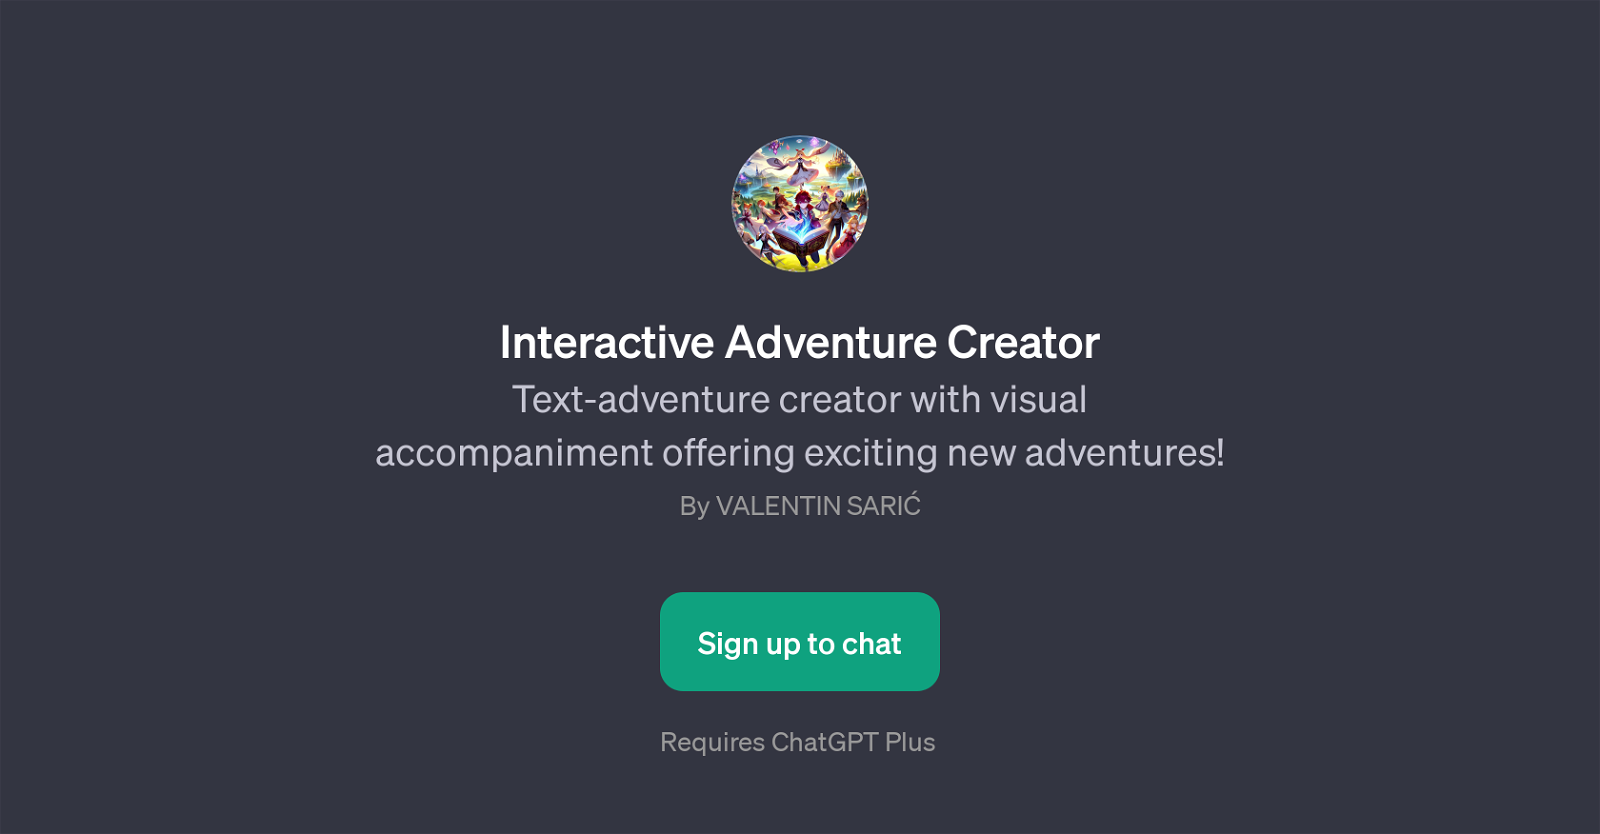 Interactive Adventure Creator website